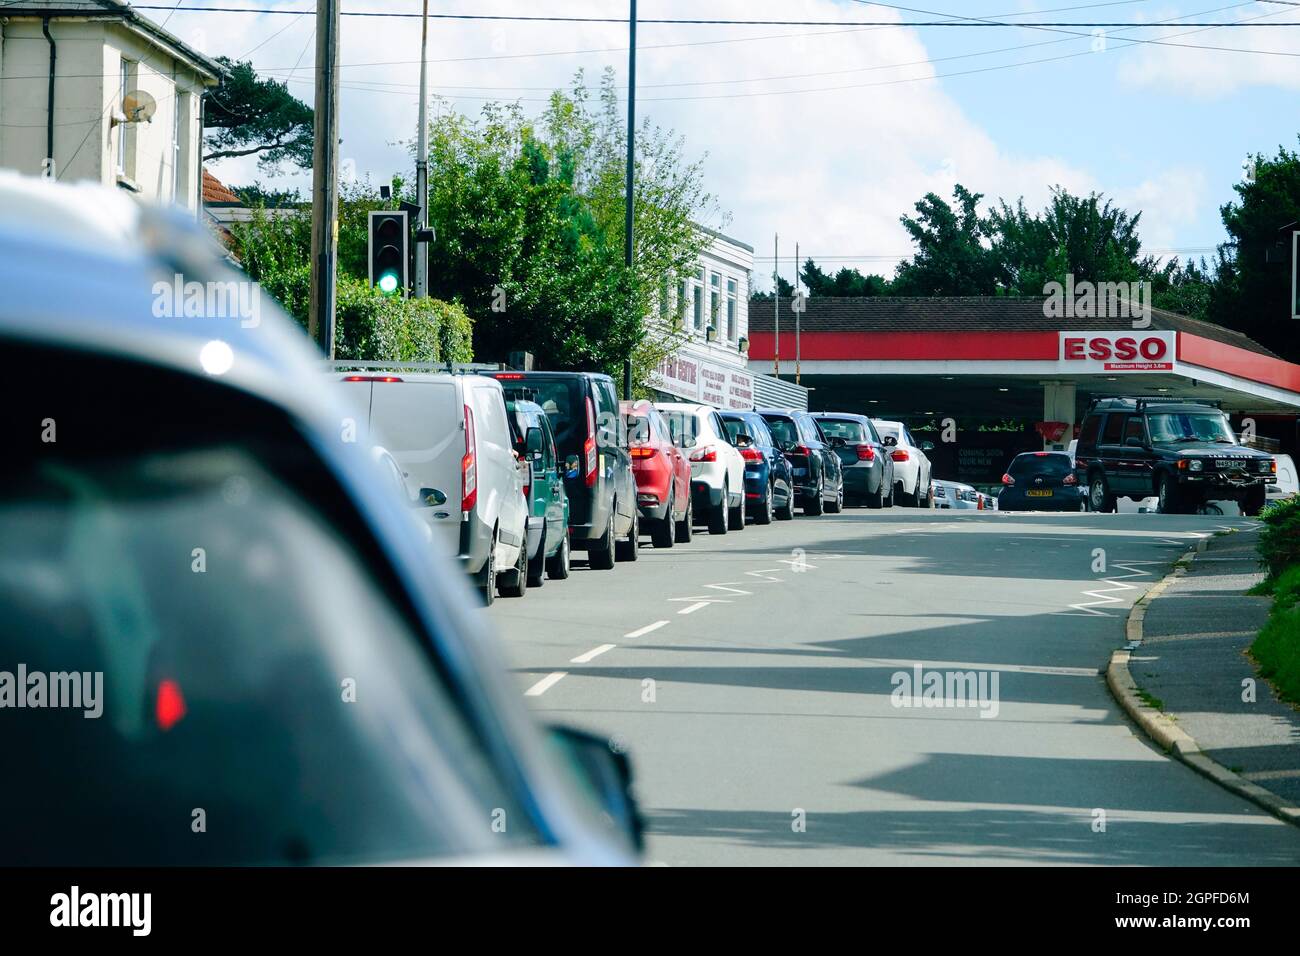 Coda di automobili in un distributore di benzina a causa di panico acquisto nel sud dell'inghilterra Foto Stock